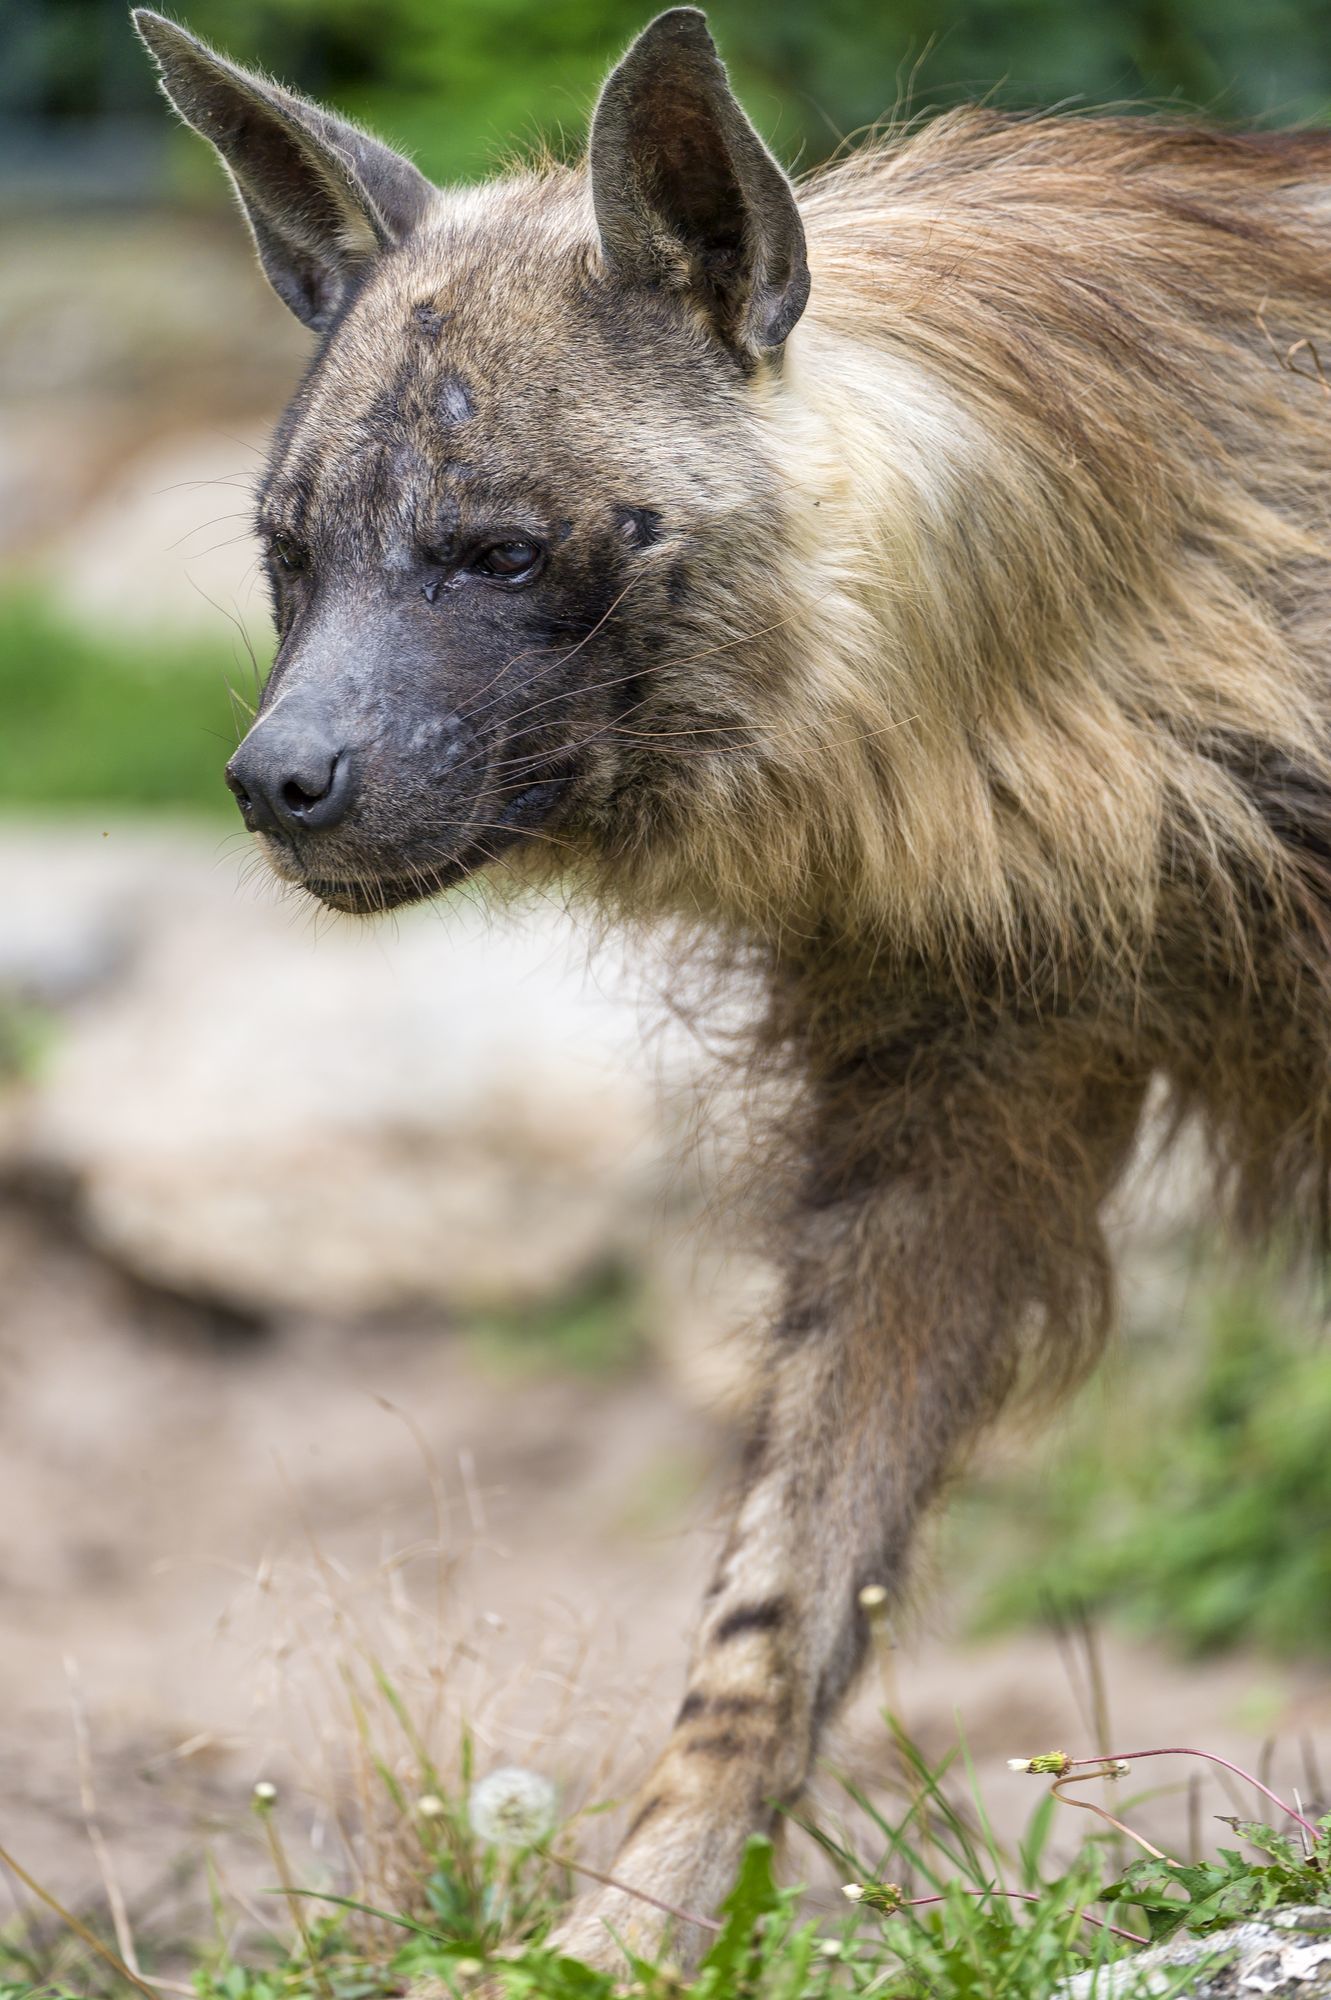 Brown hyena - Brown hyena, Hyena, Animals, Zoo, The photo, Longpost, Predator